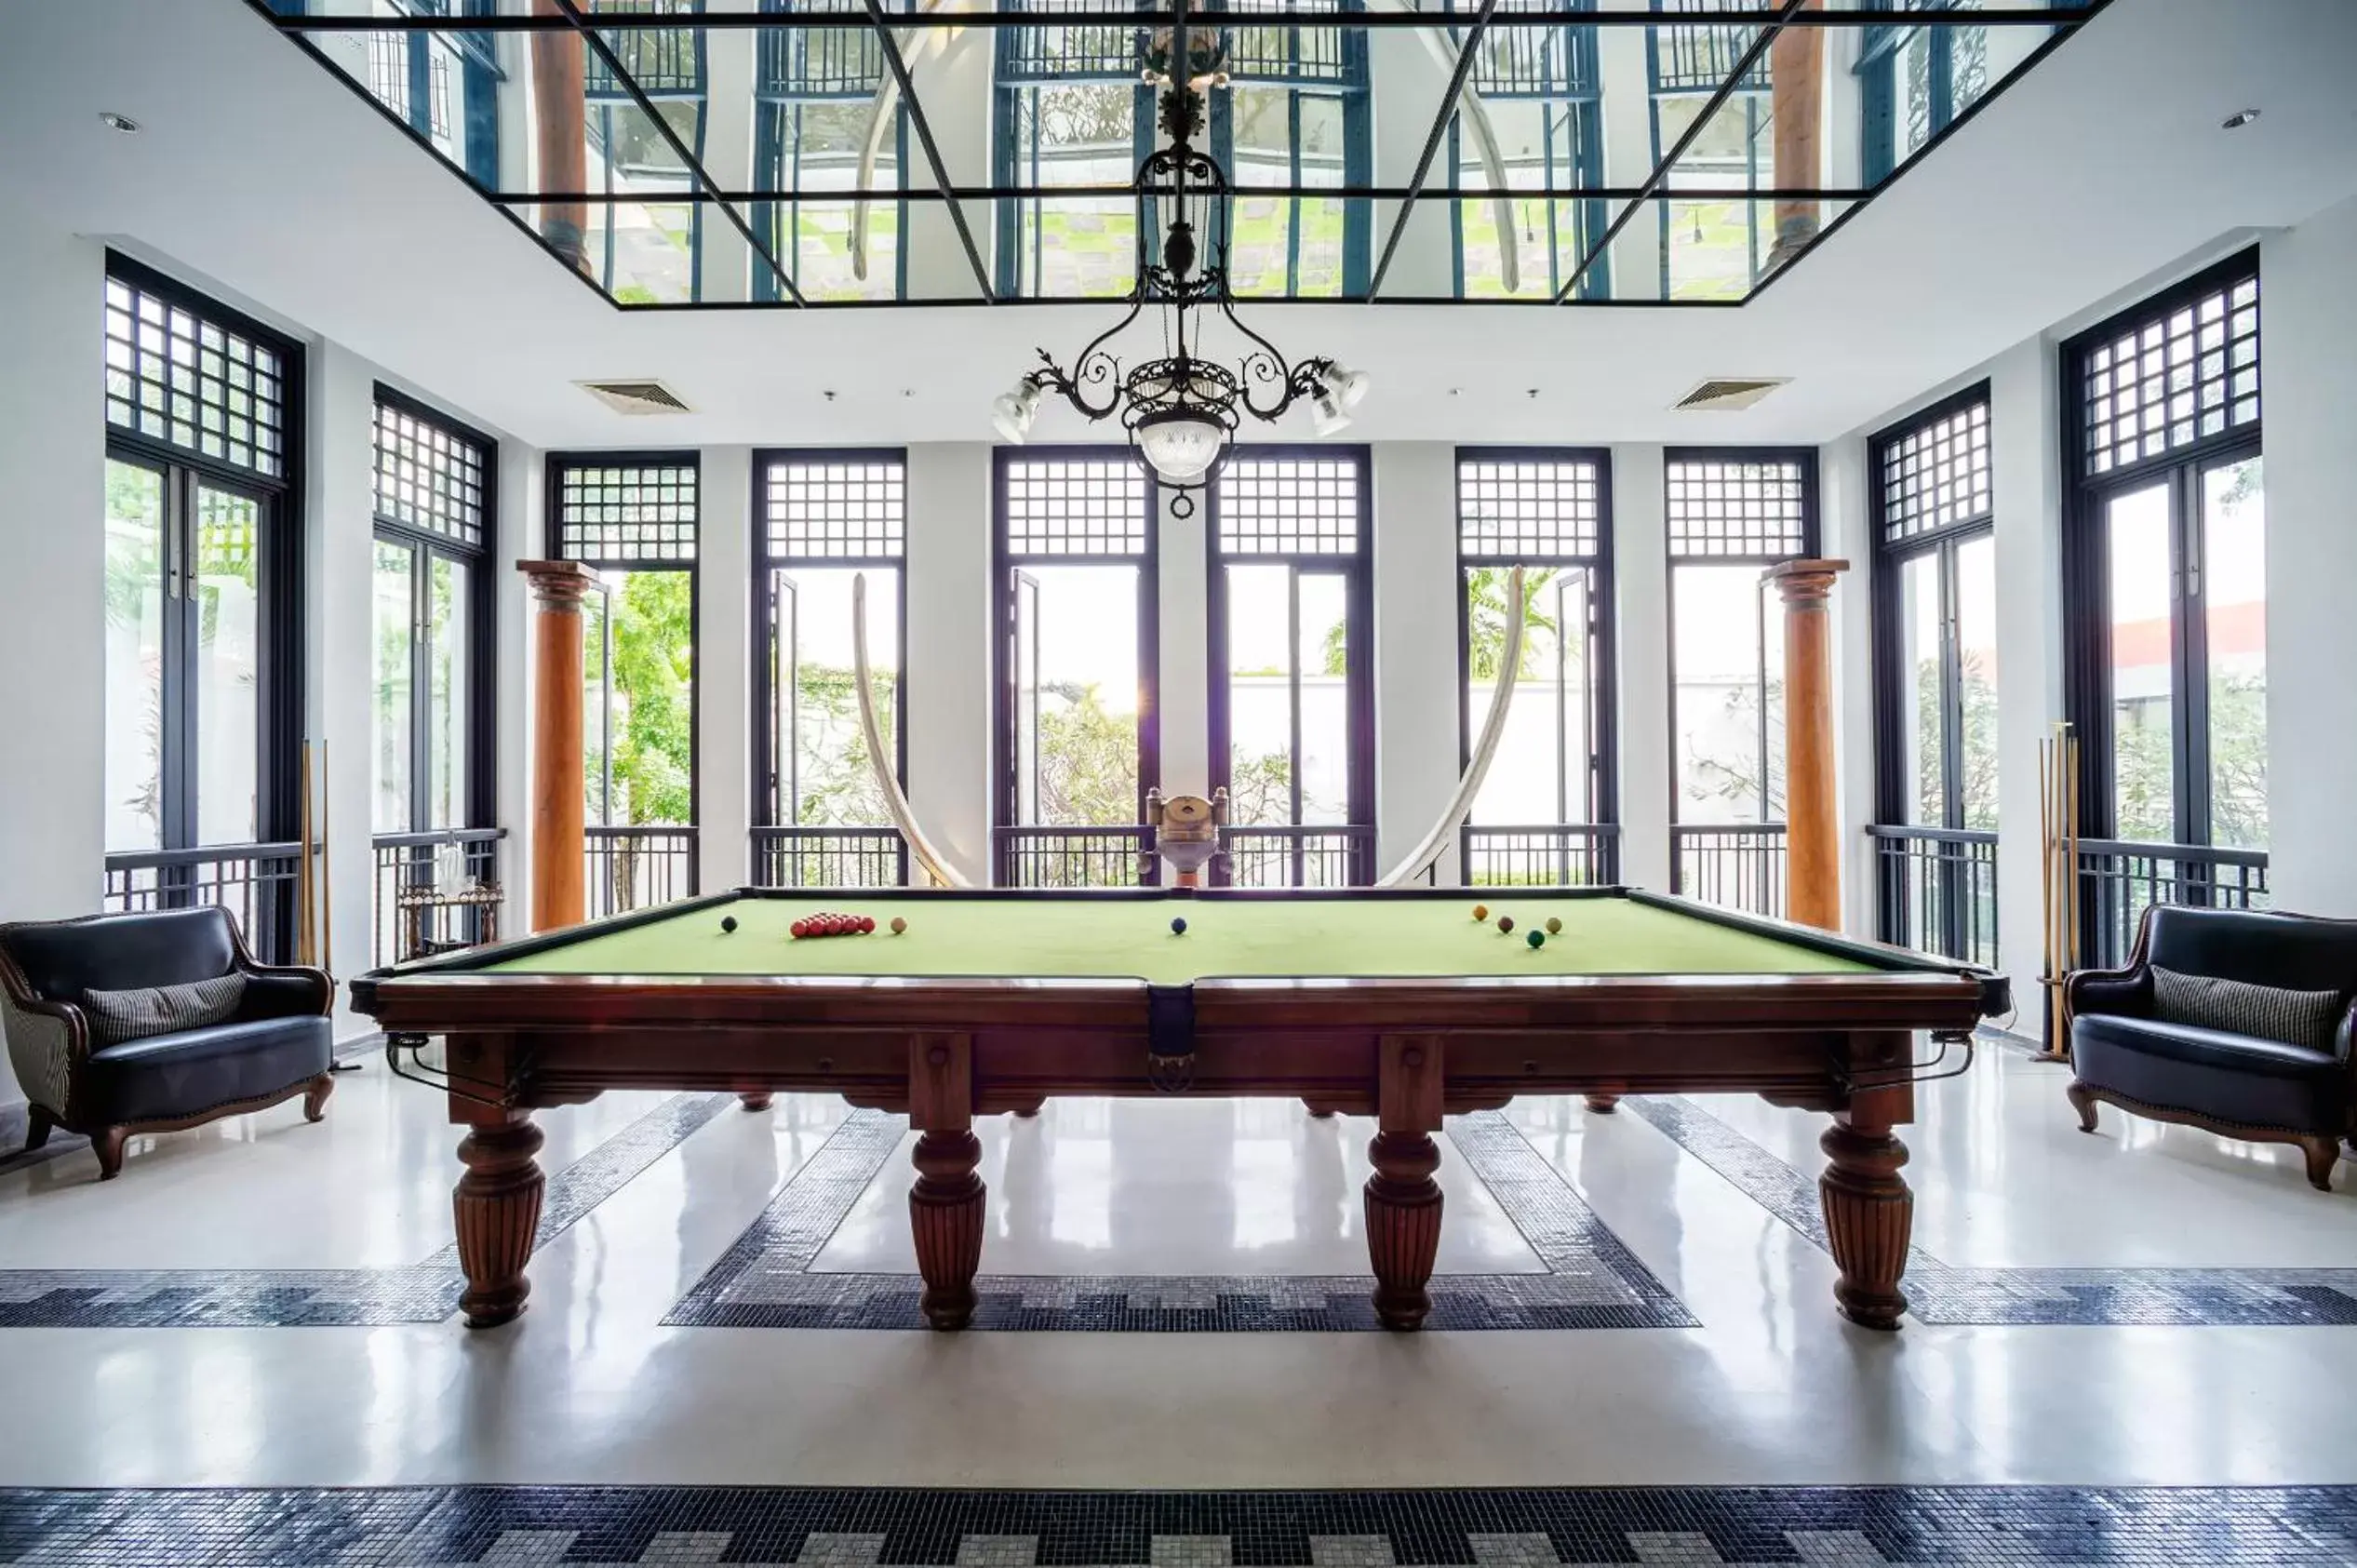 Billiards in The Siam